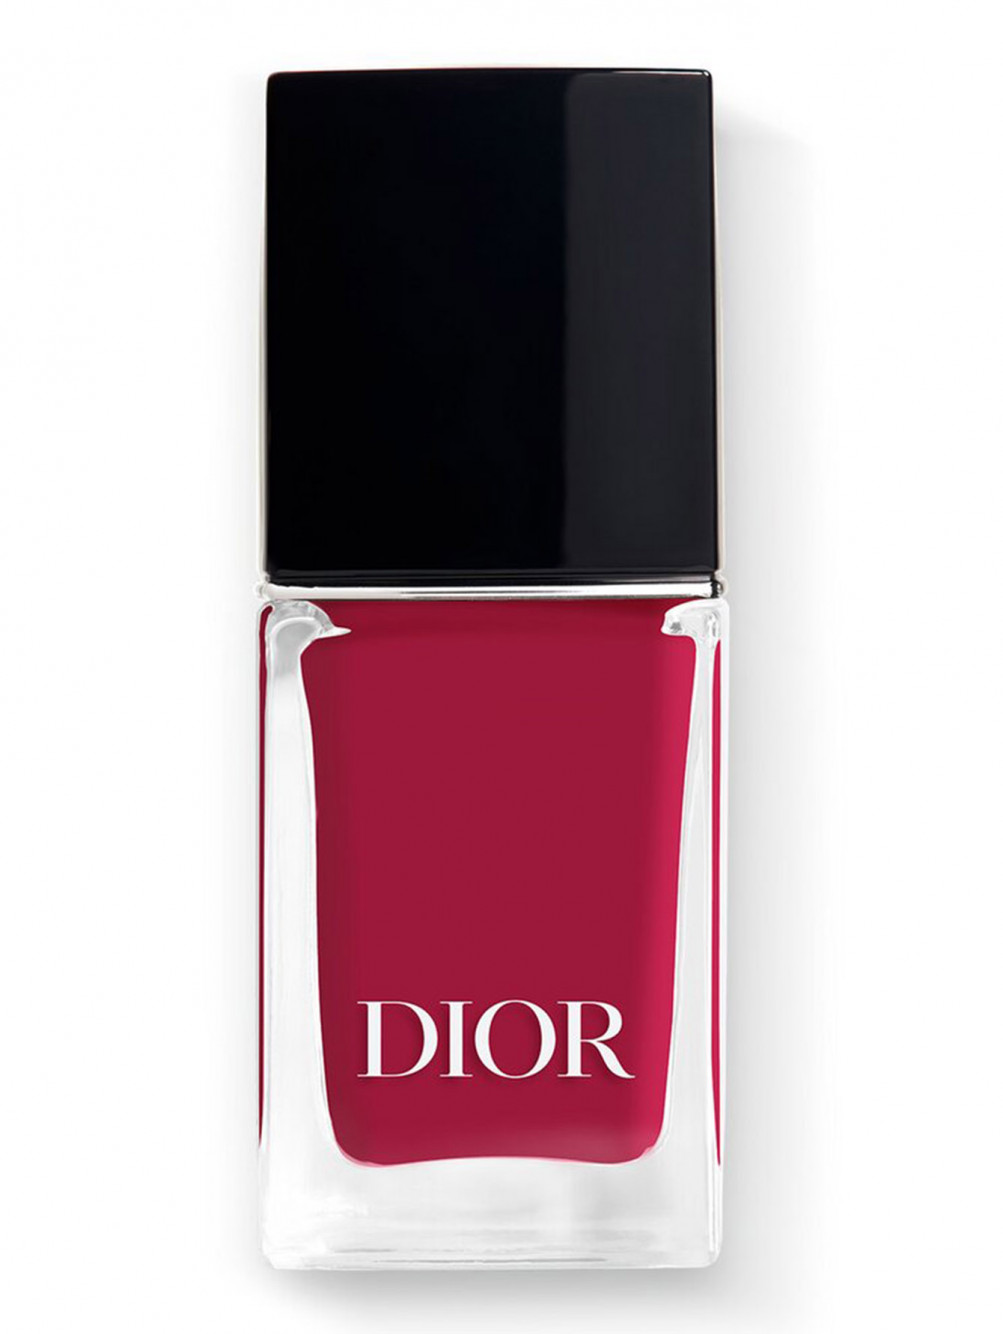 Лак для ногтей с эффектом гелевого покрытия Dior Vernis, 878 Виктуар, 10 мл - Общий вид